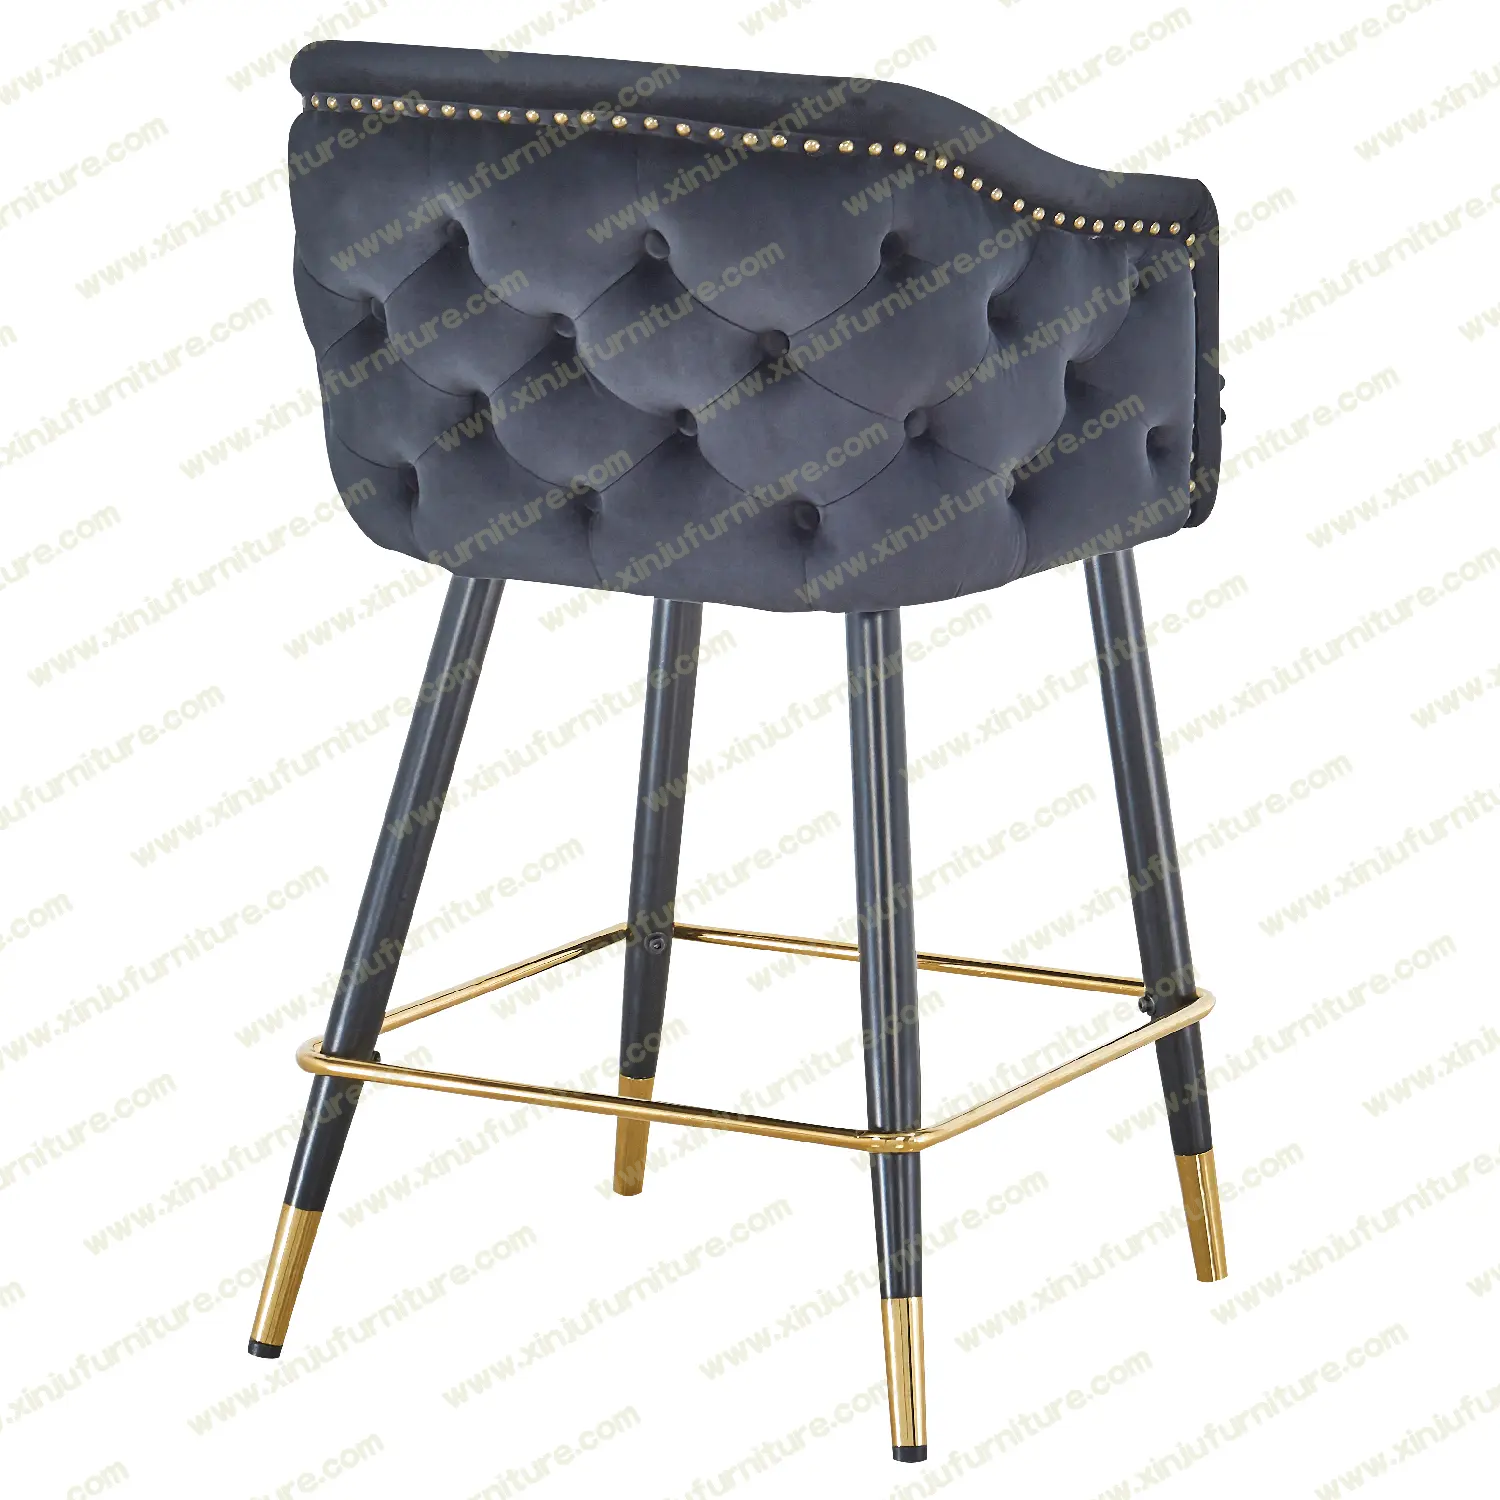 High grade black bar stool